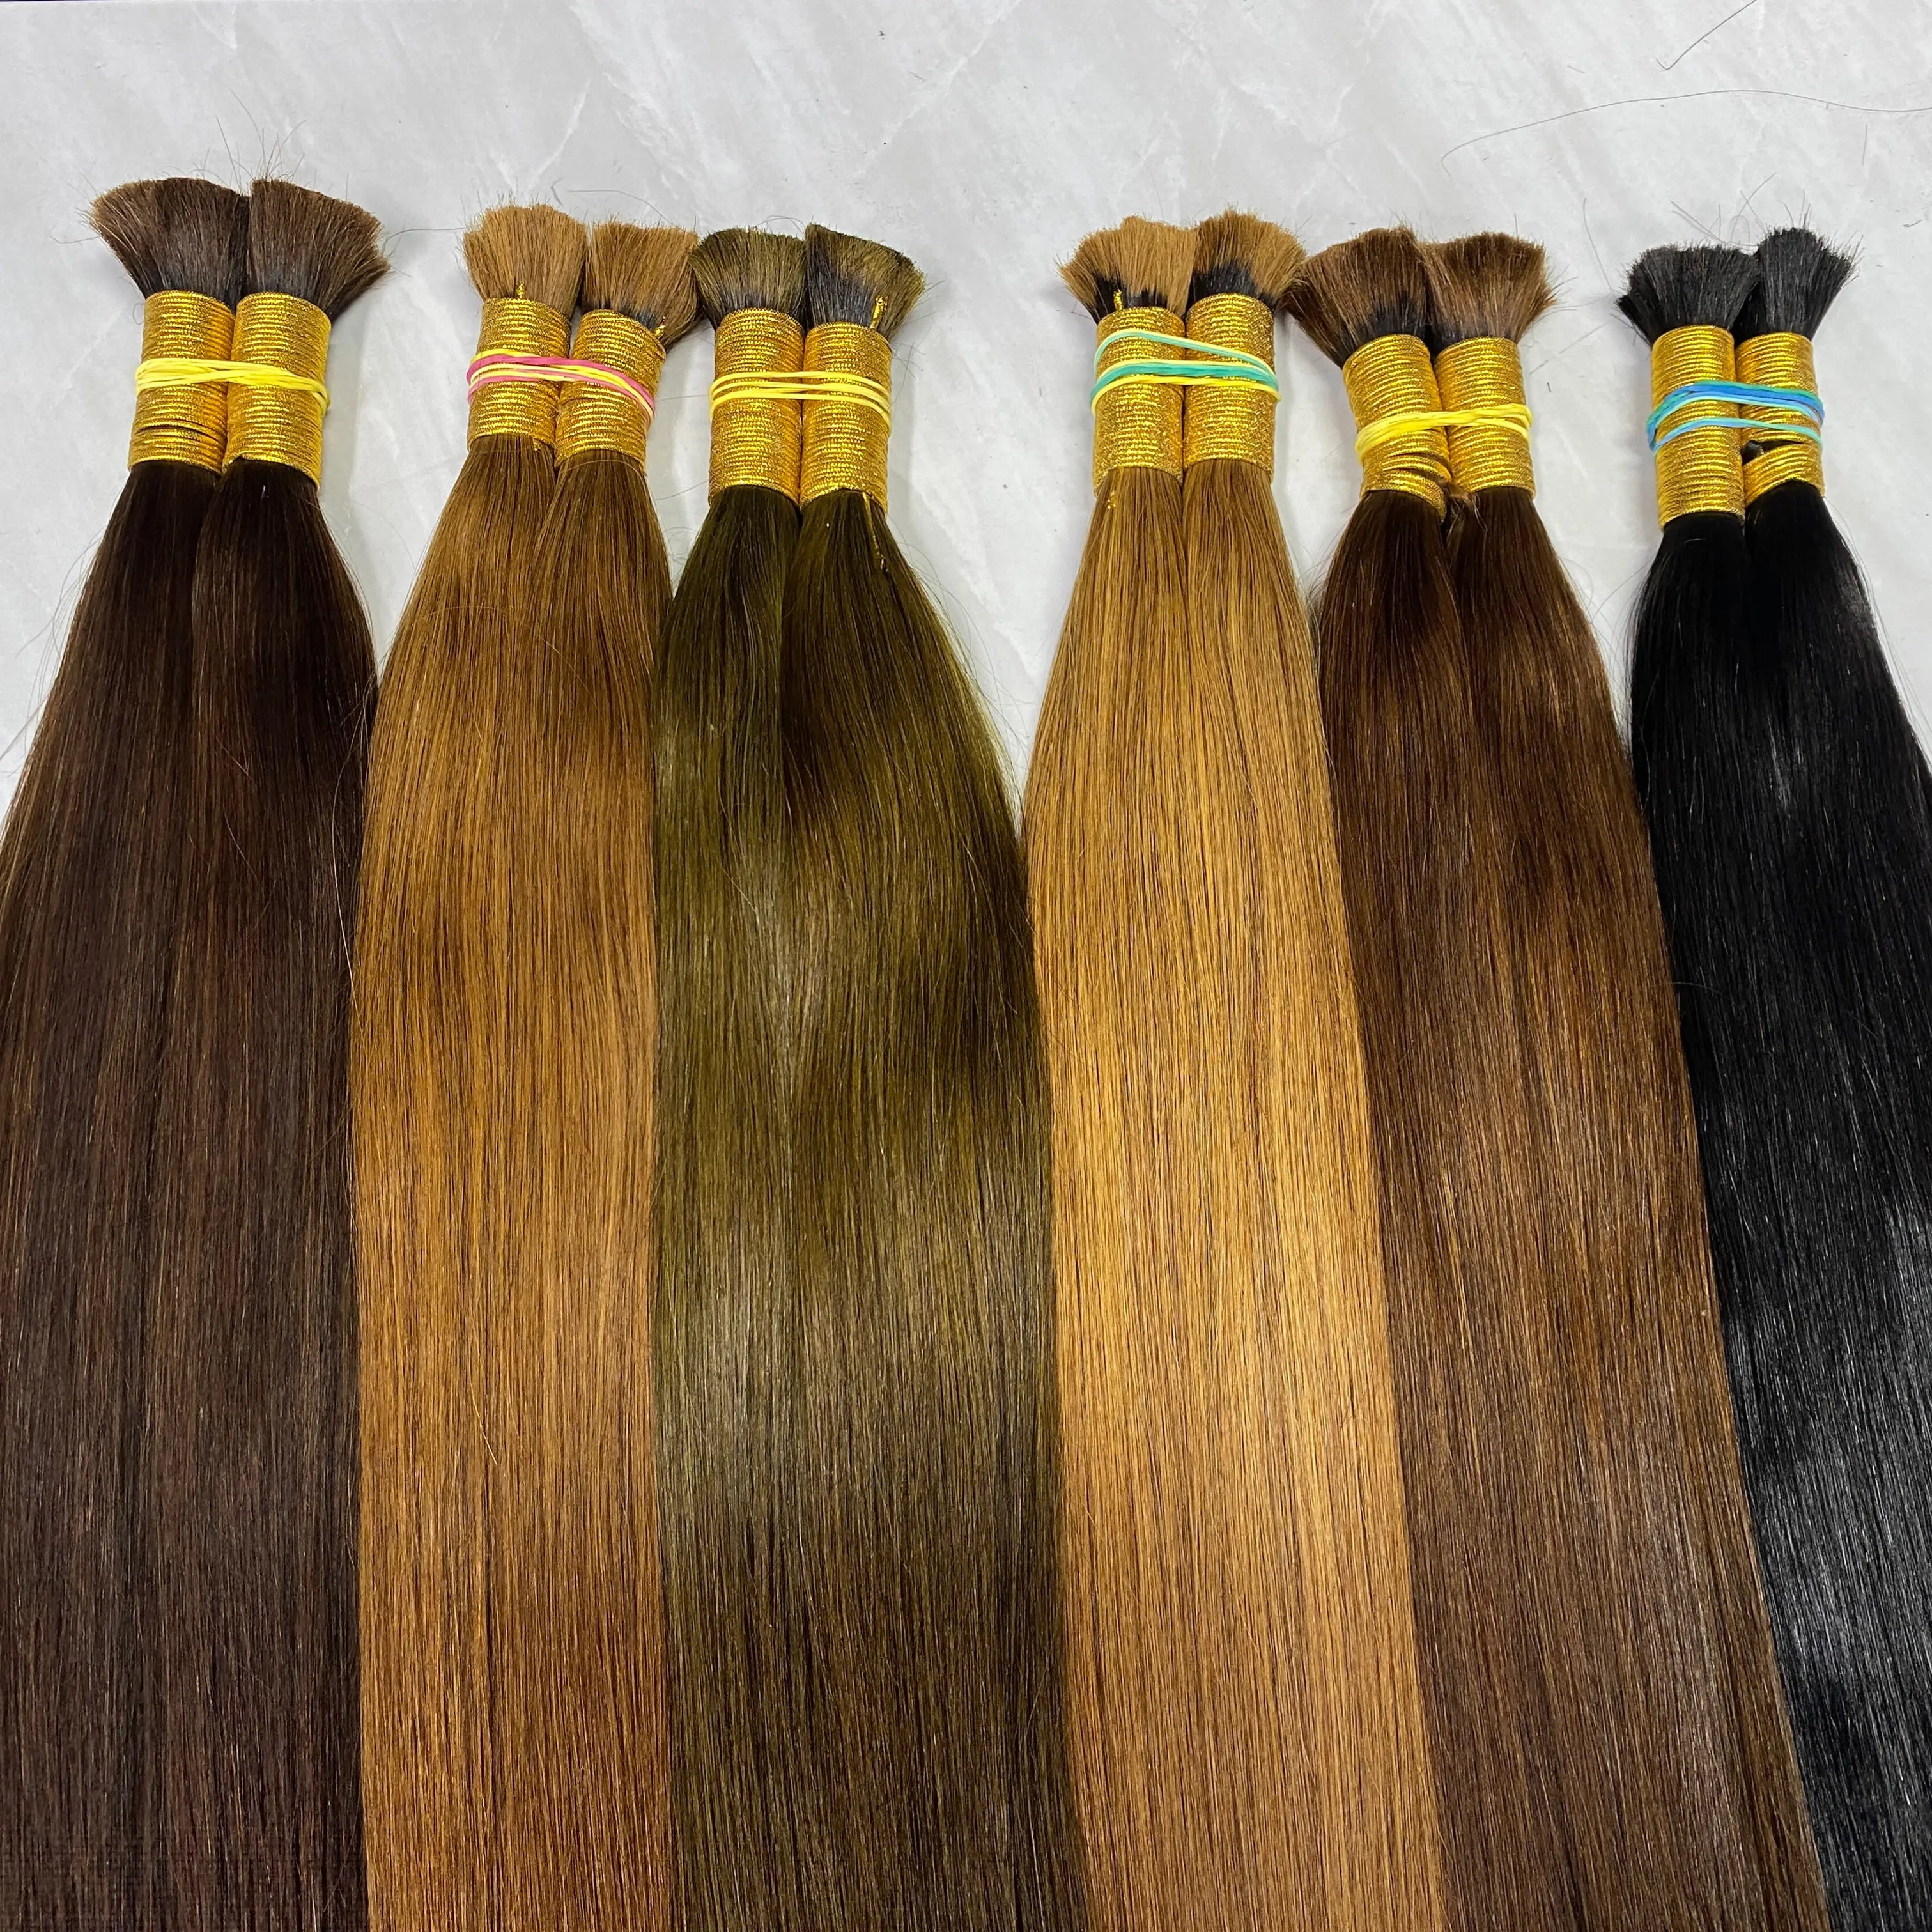 Frete gratis pra Brasil, необработанные мягкие extensiones cabello, натурального цвета, прямые, объемные 100%, натуральные кабело, хумано для женщин